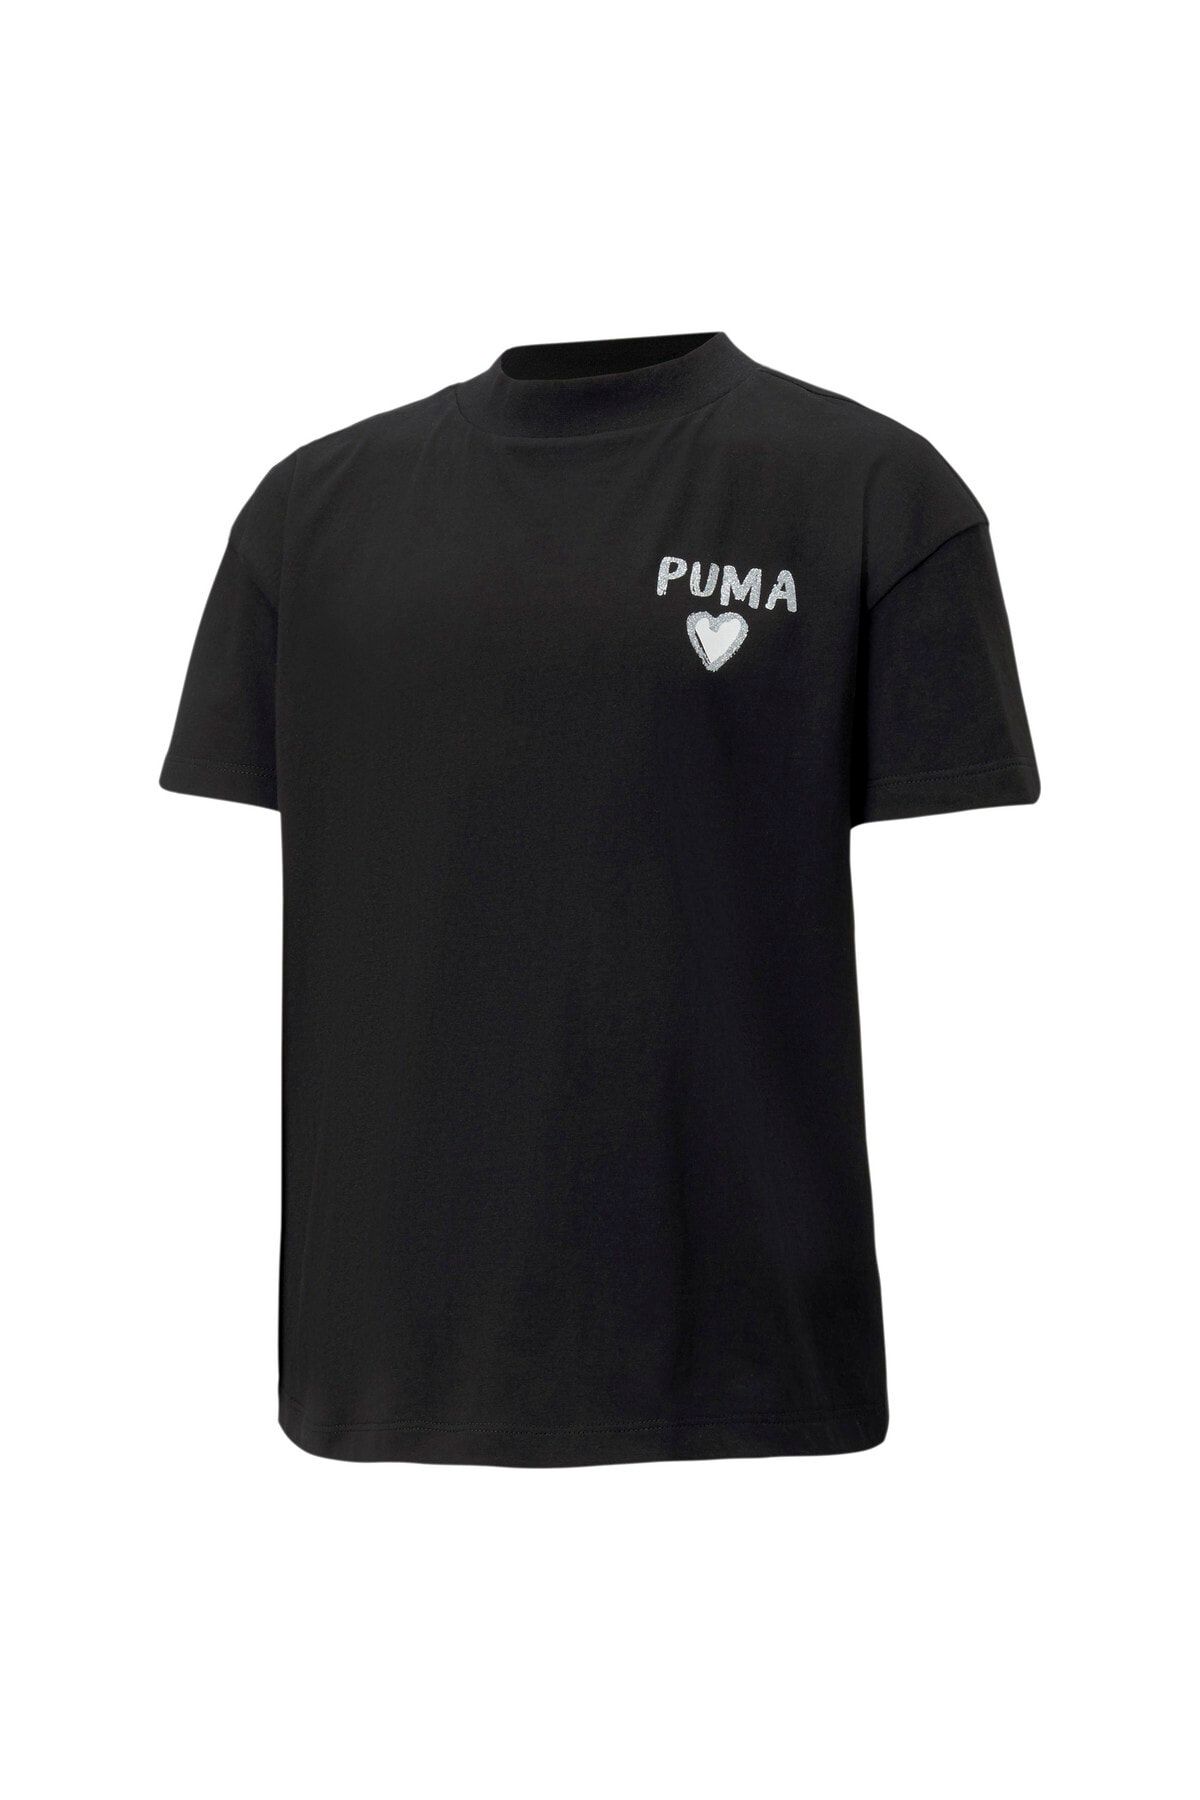 Puma Alpha Trend Kız Çocuk T-Shirt